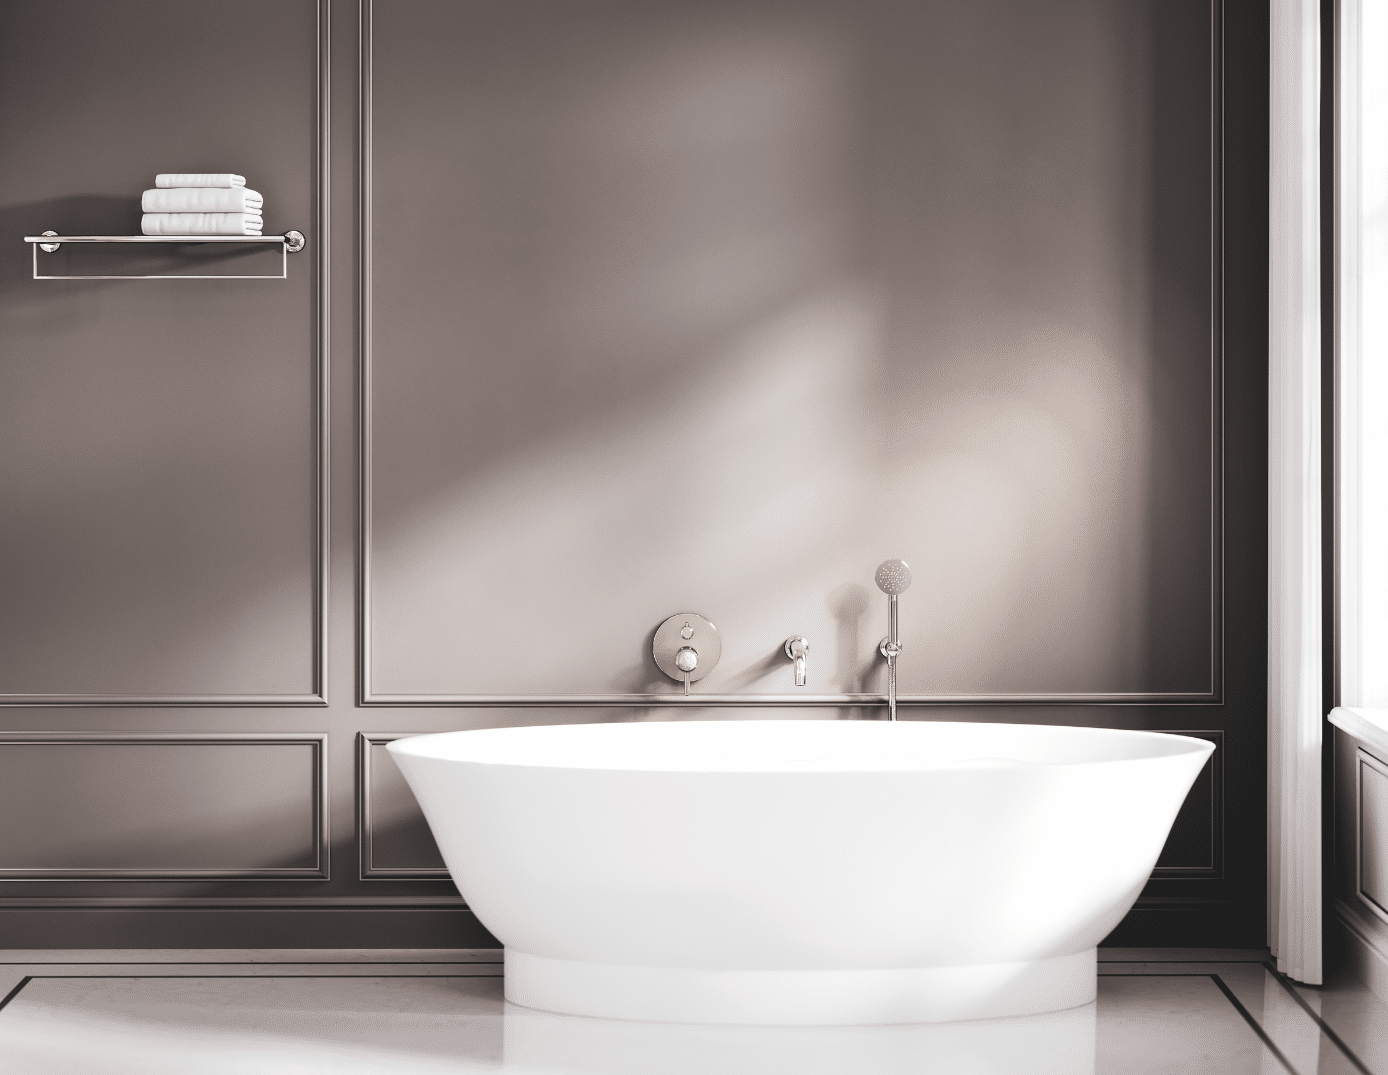 Jörger zeigt eine weisse freistehende Badewanne, Armaturen in Silbernickel und einem an der grauen Wand montierten Handtuchhalter mit weissen Handtüchern.